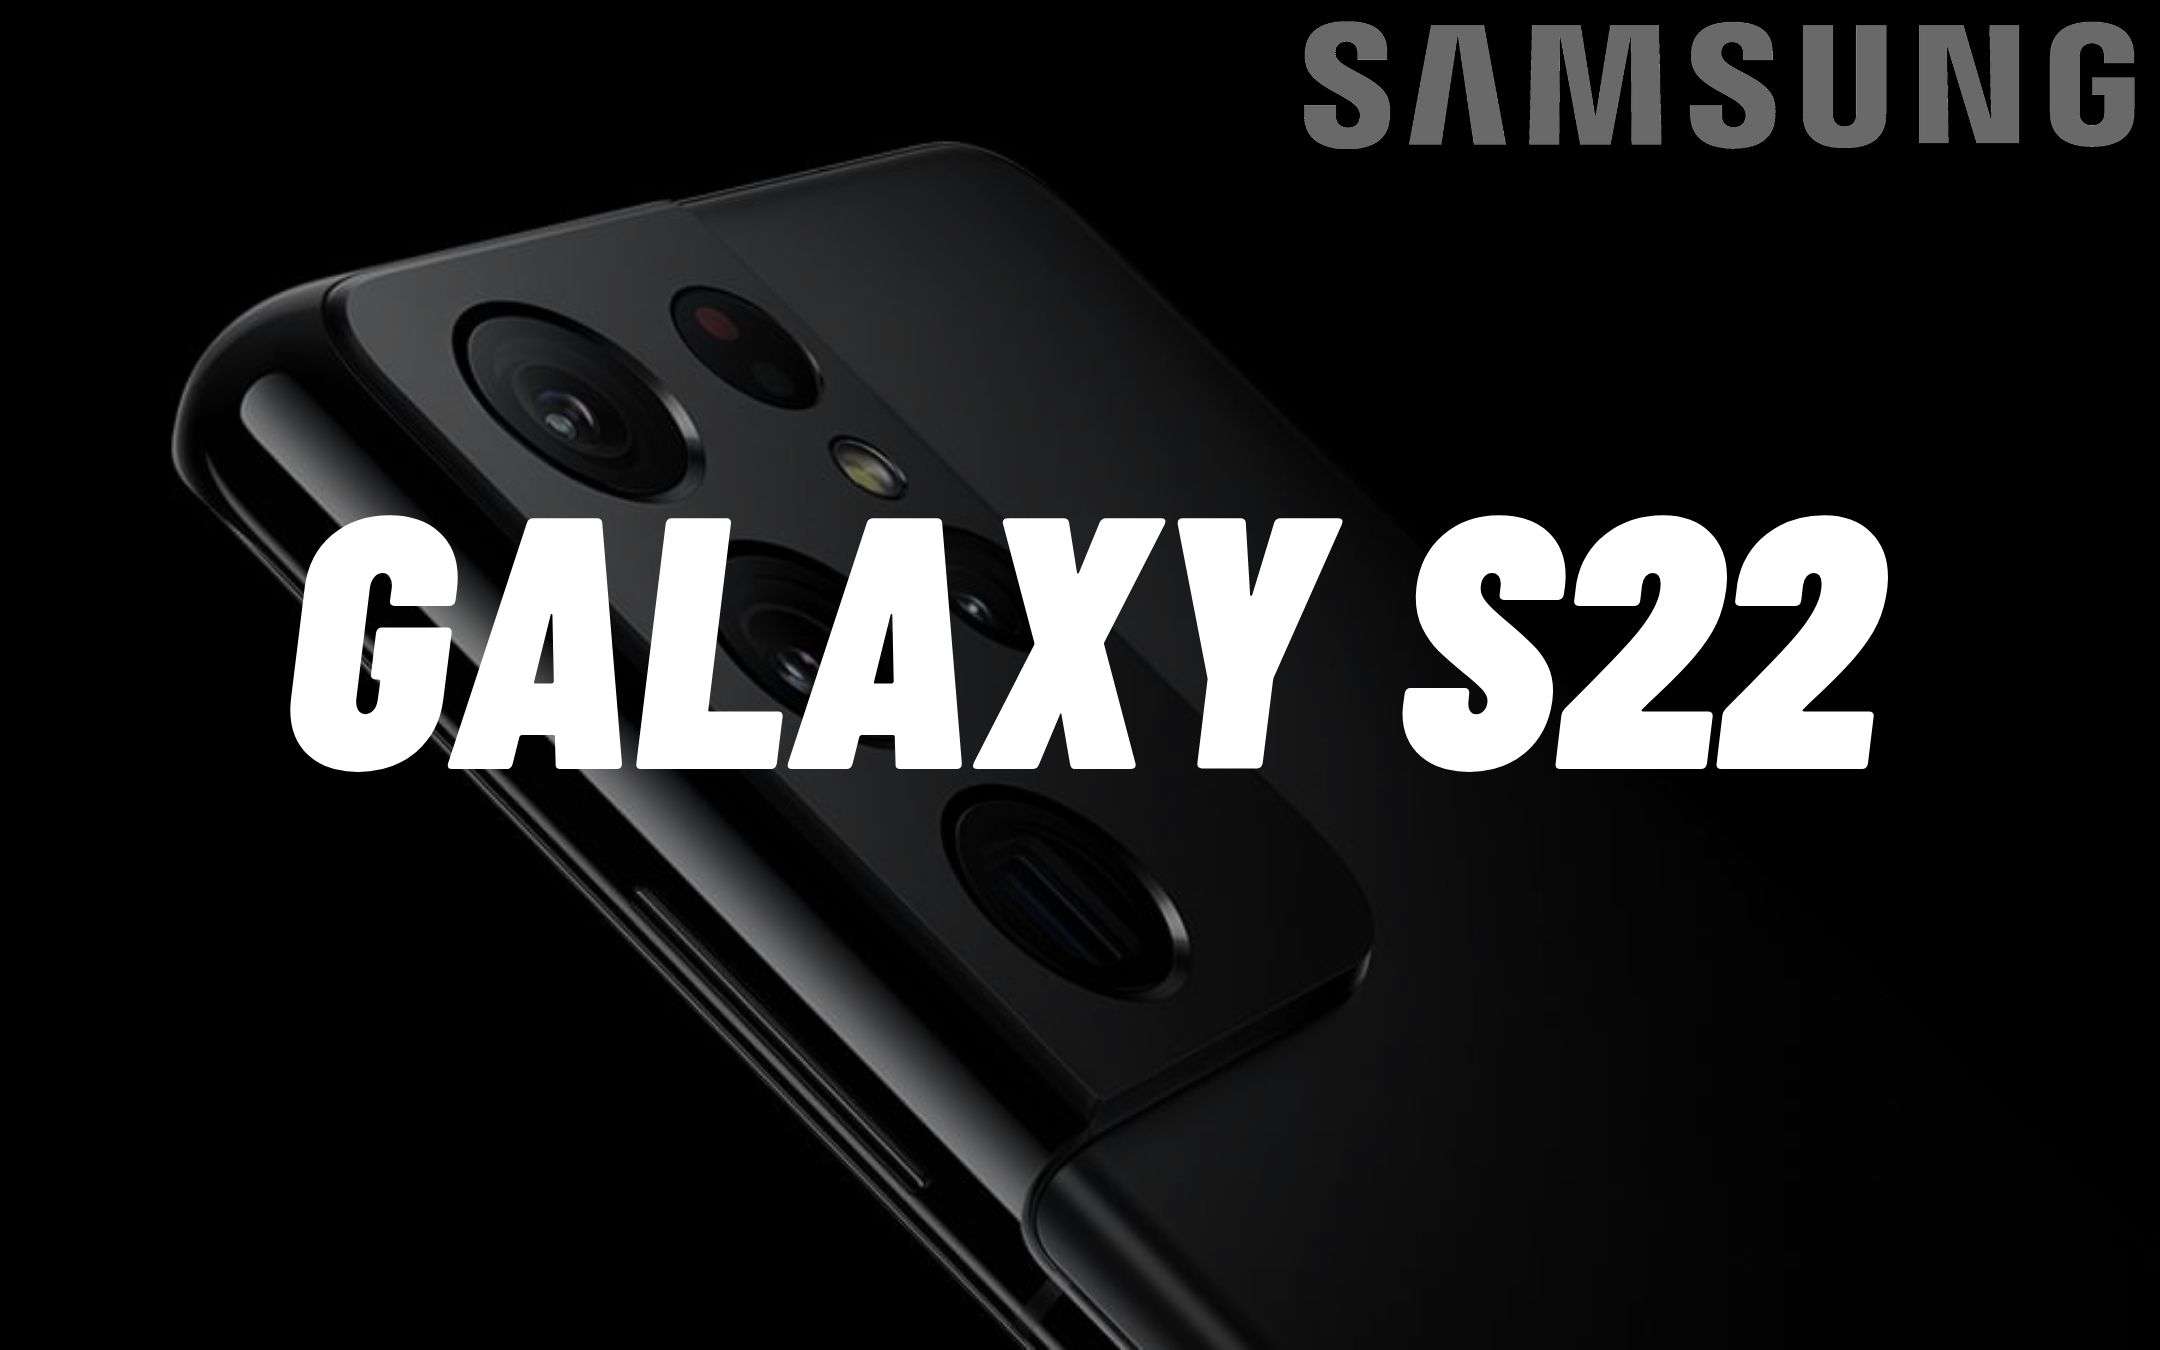 Samsung Galaxy S22 avrà lenti OLYMPUS? (RUMOR)